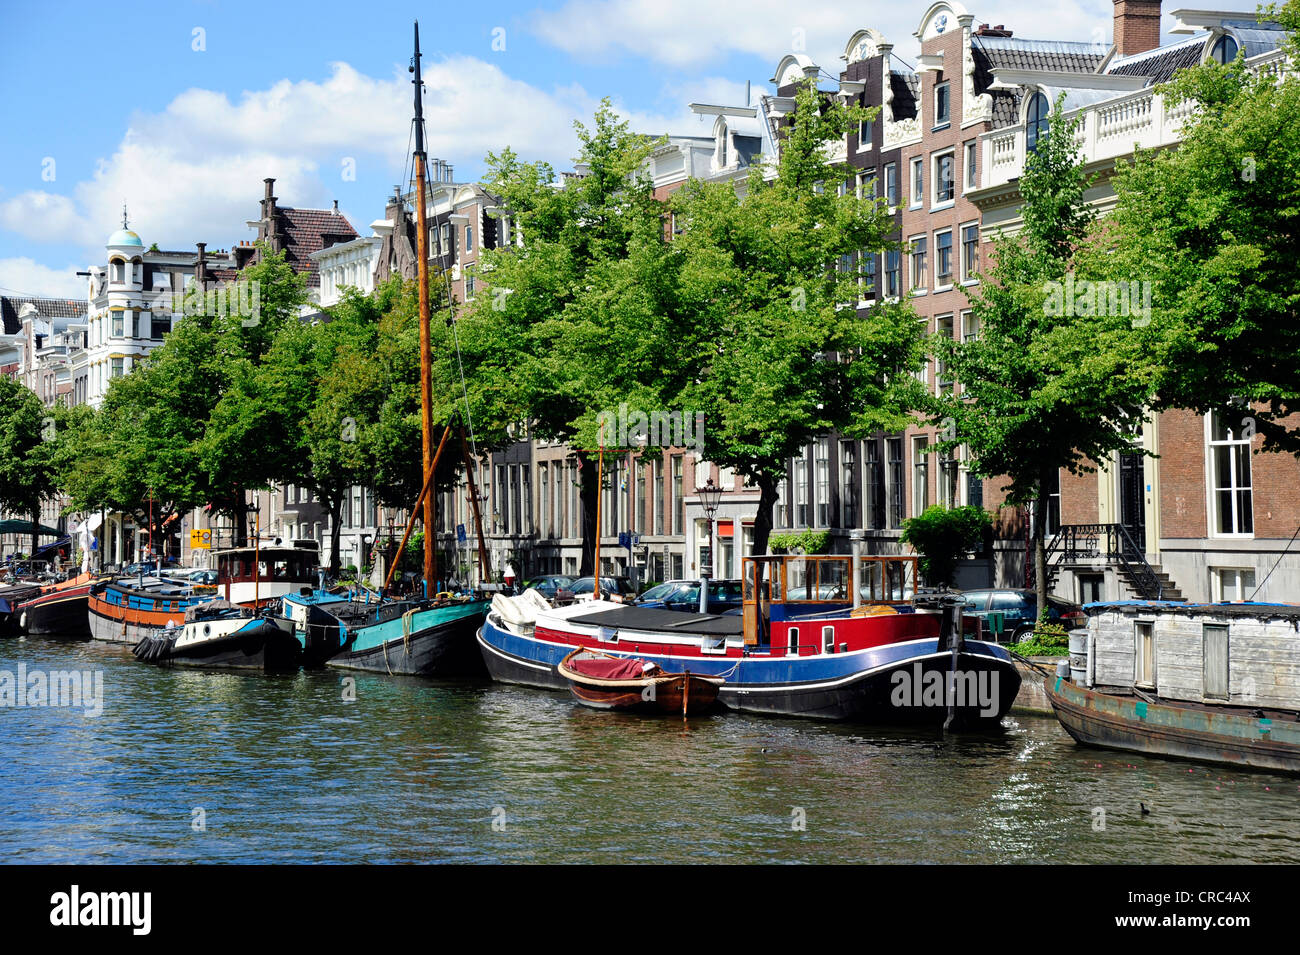 Banca Canale di Beagle case, imbarcazioni storiche su un canale, City Centre, Amsterdam, Olanda Settentrionale, Paesi Bassi, Europa Foto Stock